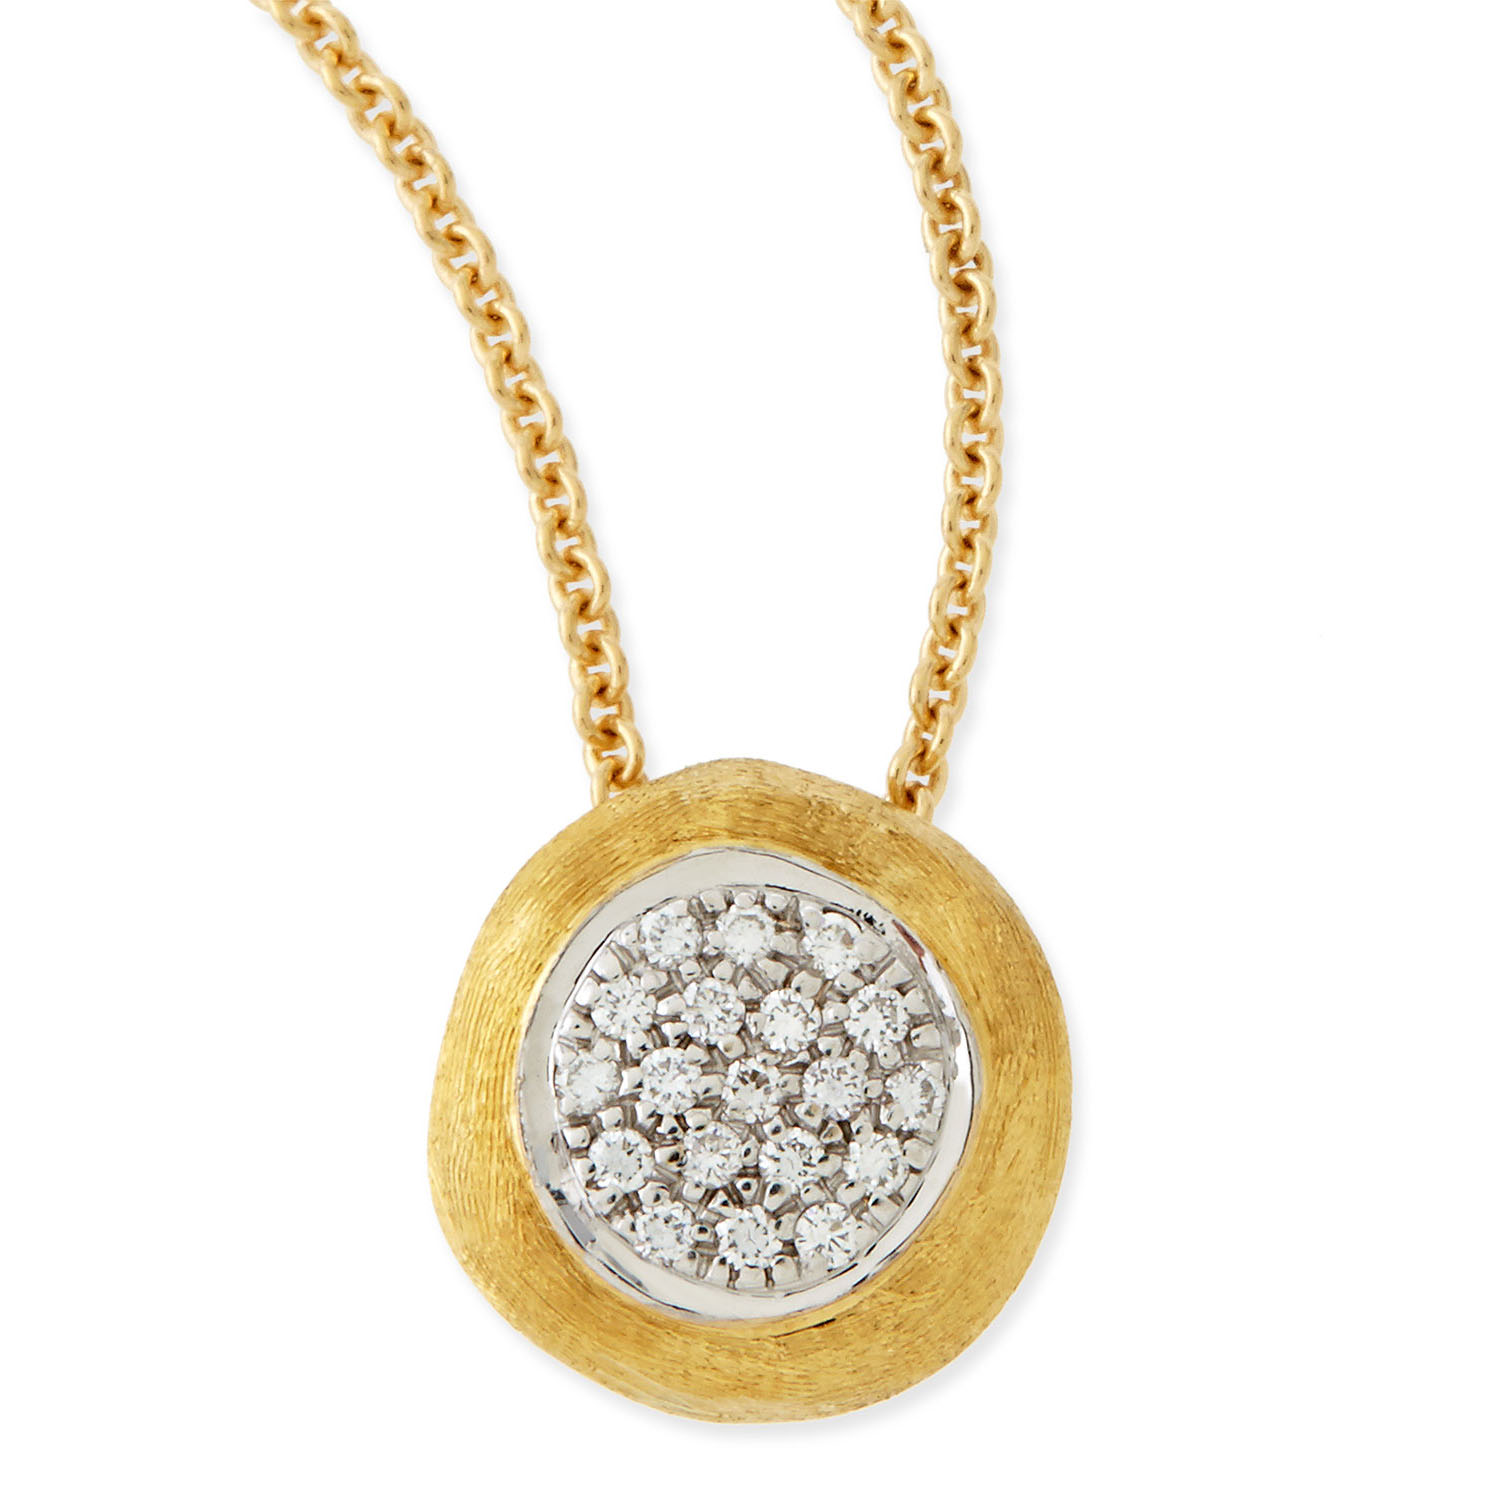 Mórdhíol Saincheaptha óir 18k Diamond siogairlín muince na mban OEM/ODM Jewelry dearthóir jewelry fíneáil